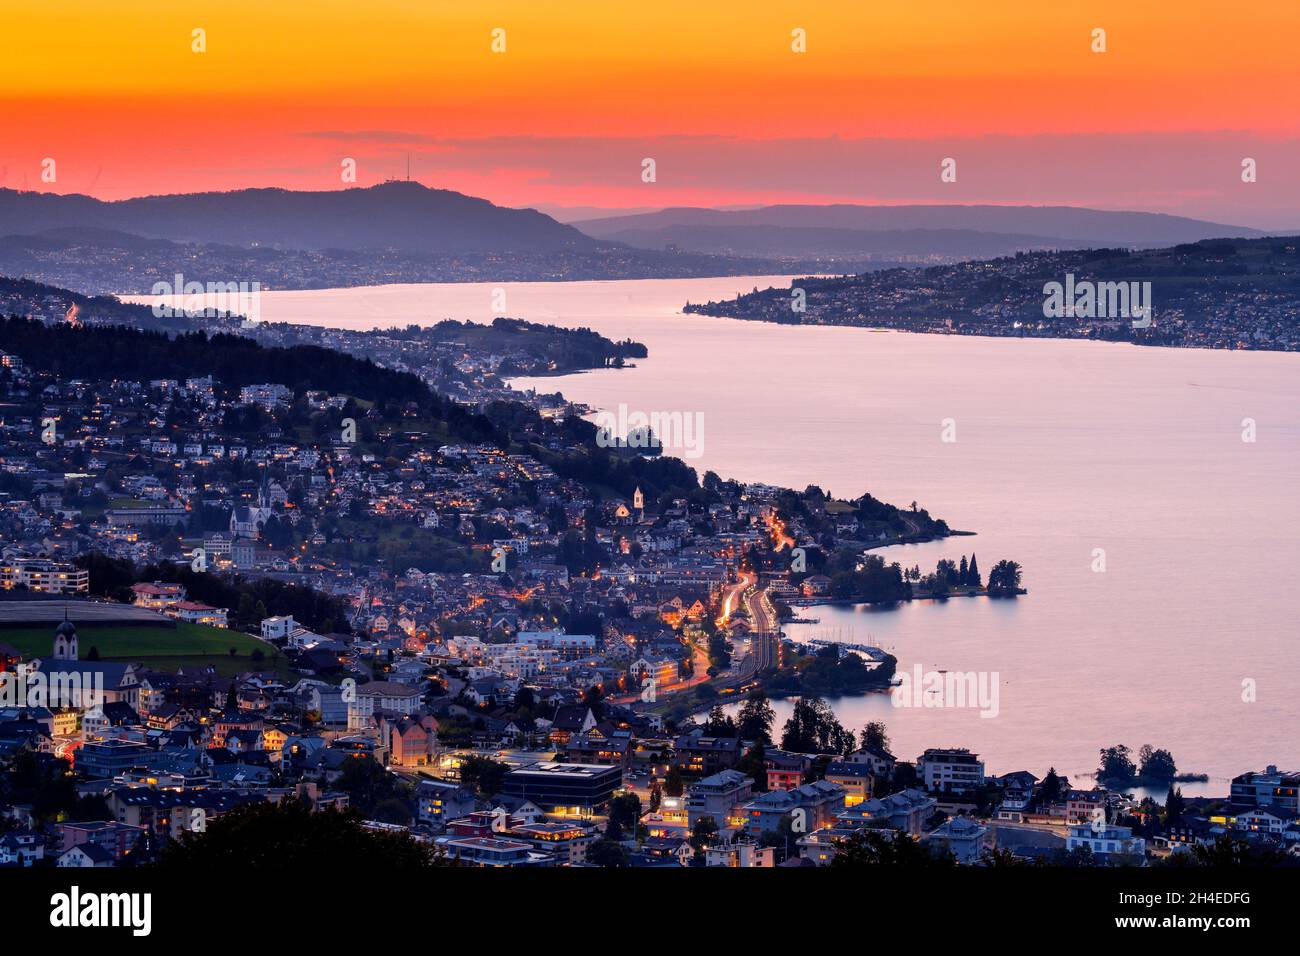 Blick bei Abenddämmerung von Feusisberg über den Zürichsee nach Zürich, mit den beleuchteten Ortschaften Wollerau, Richterswil, Wädenswil und Meilen u Stock Photo